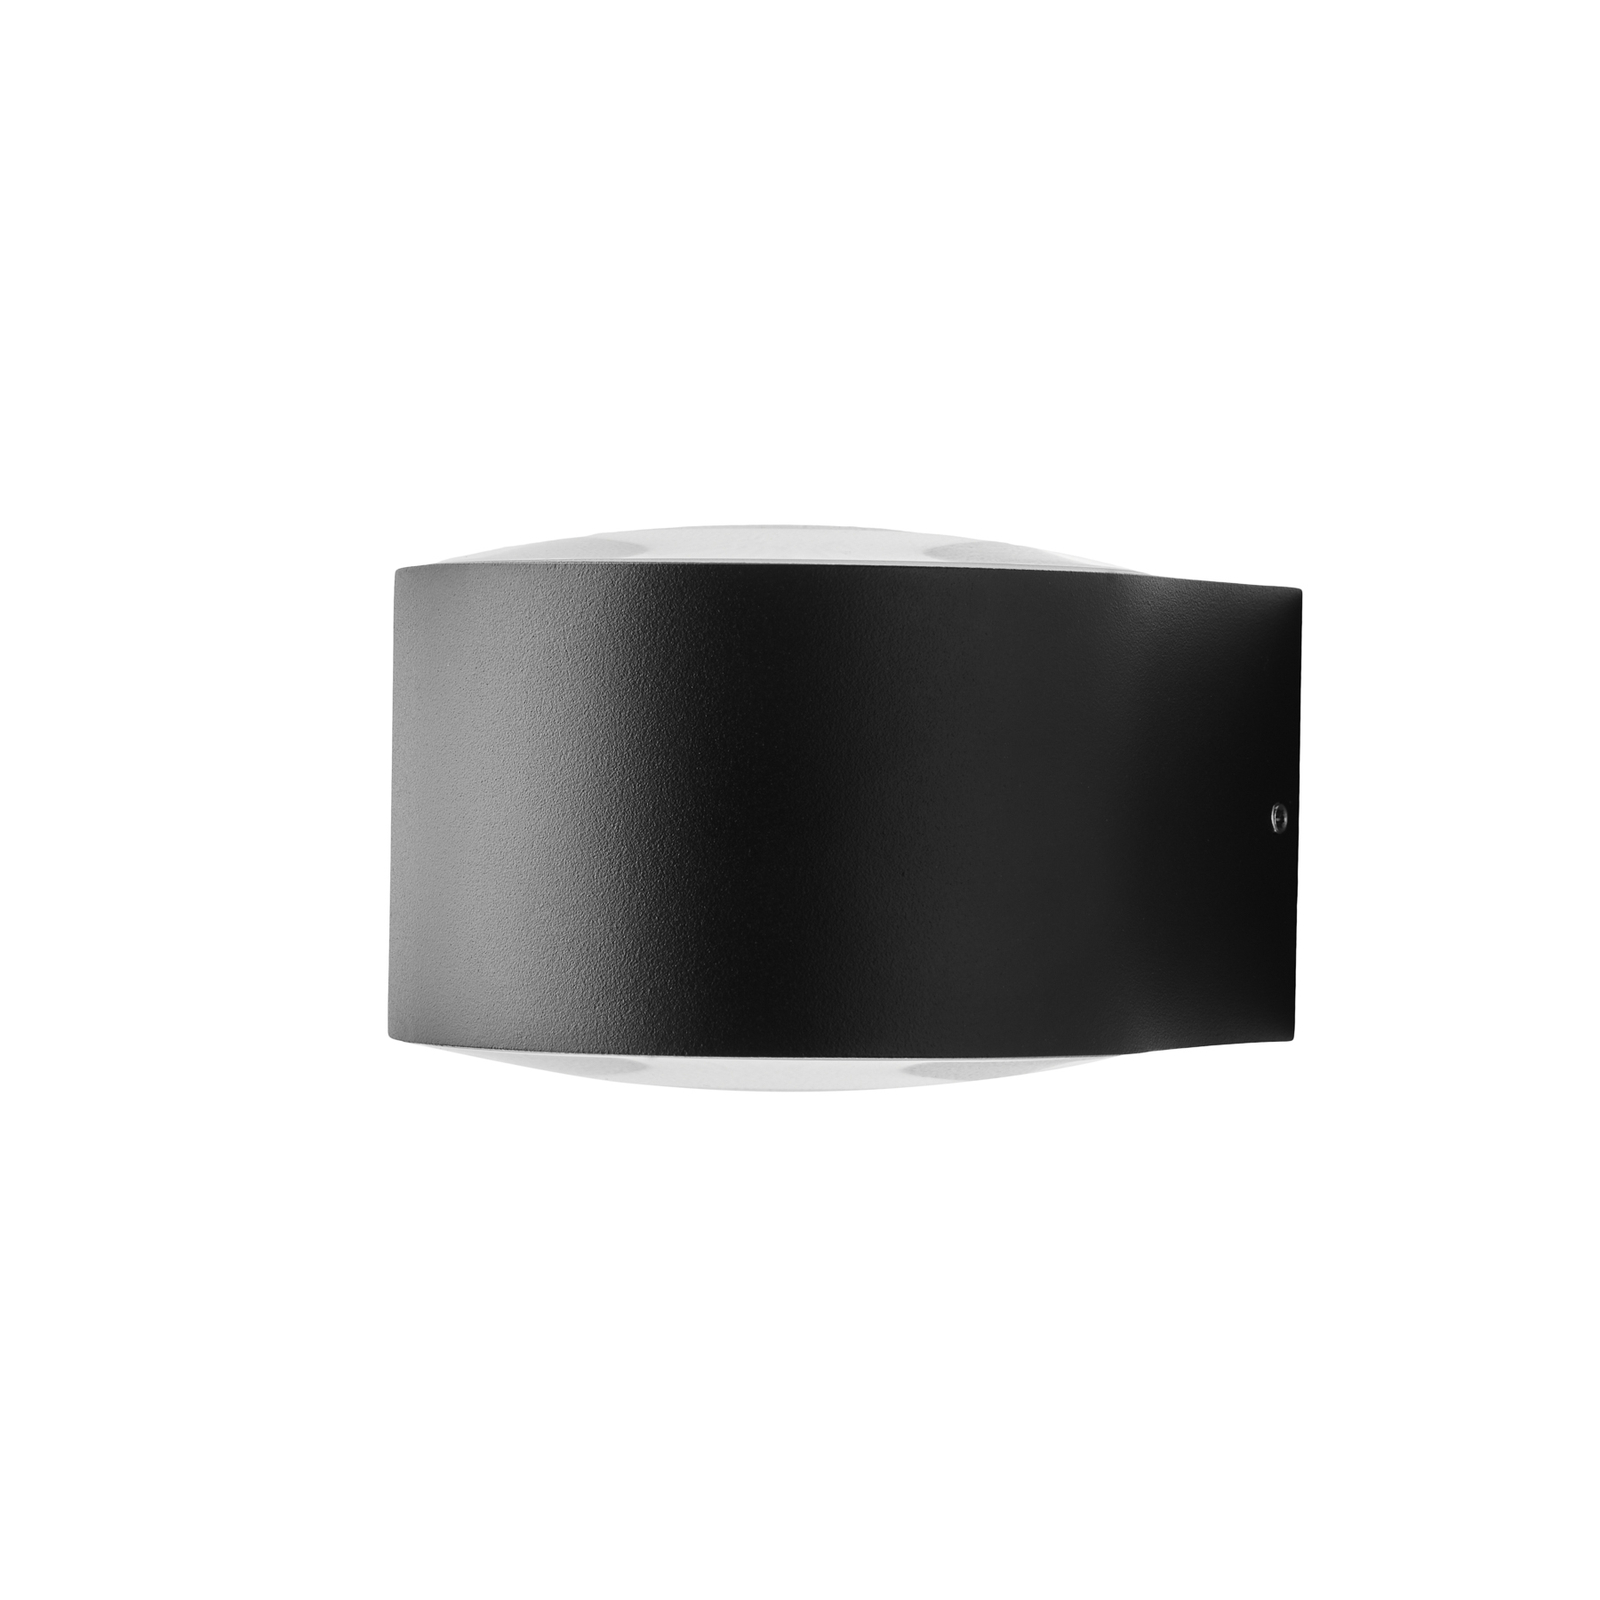 LOOM DESIGN Frey LED fali lámpa IP65 2x6W fekete színű